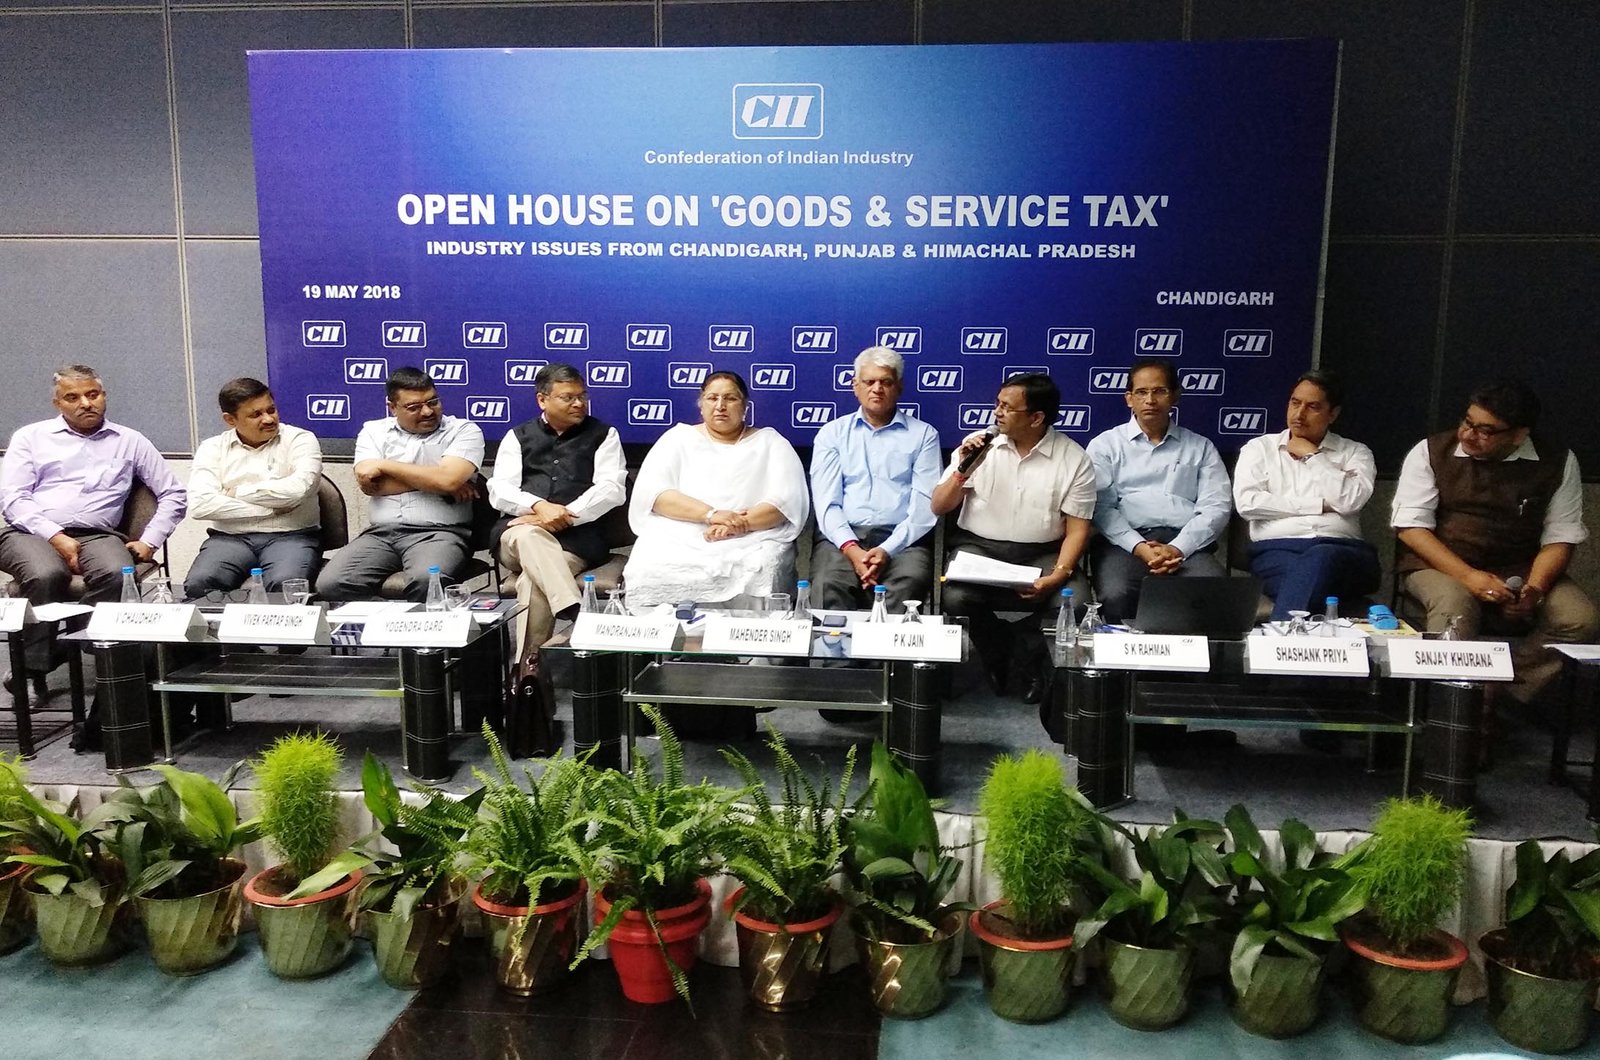 Open House At CII : GST, CBIC Brass Clear The Air, Lifeinchd